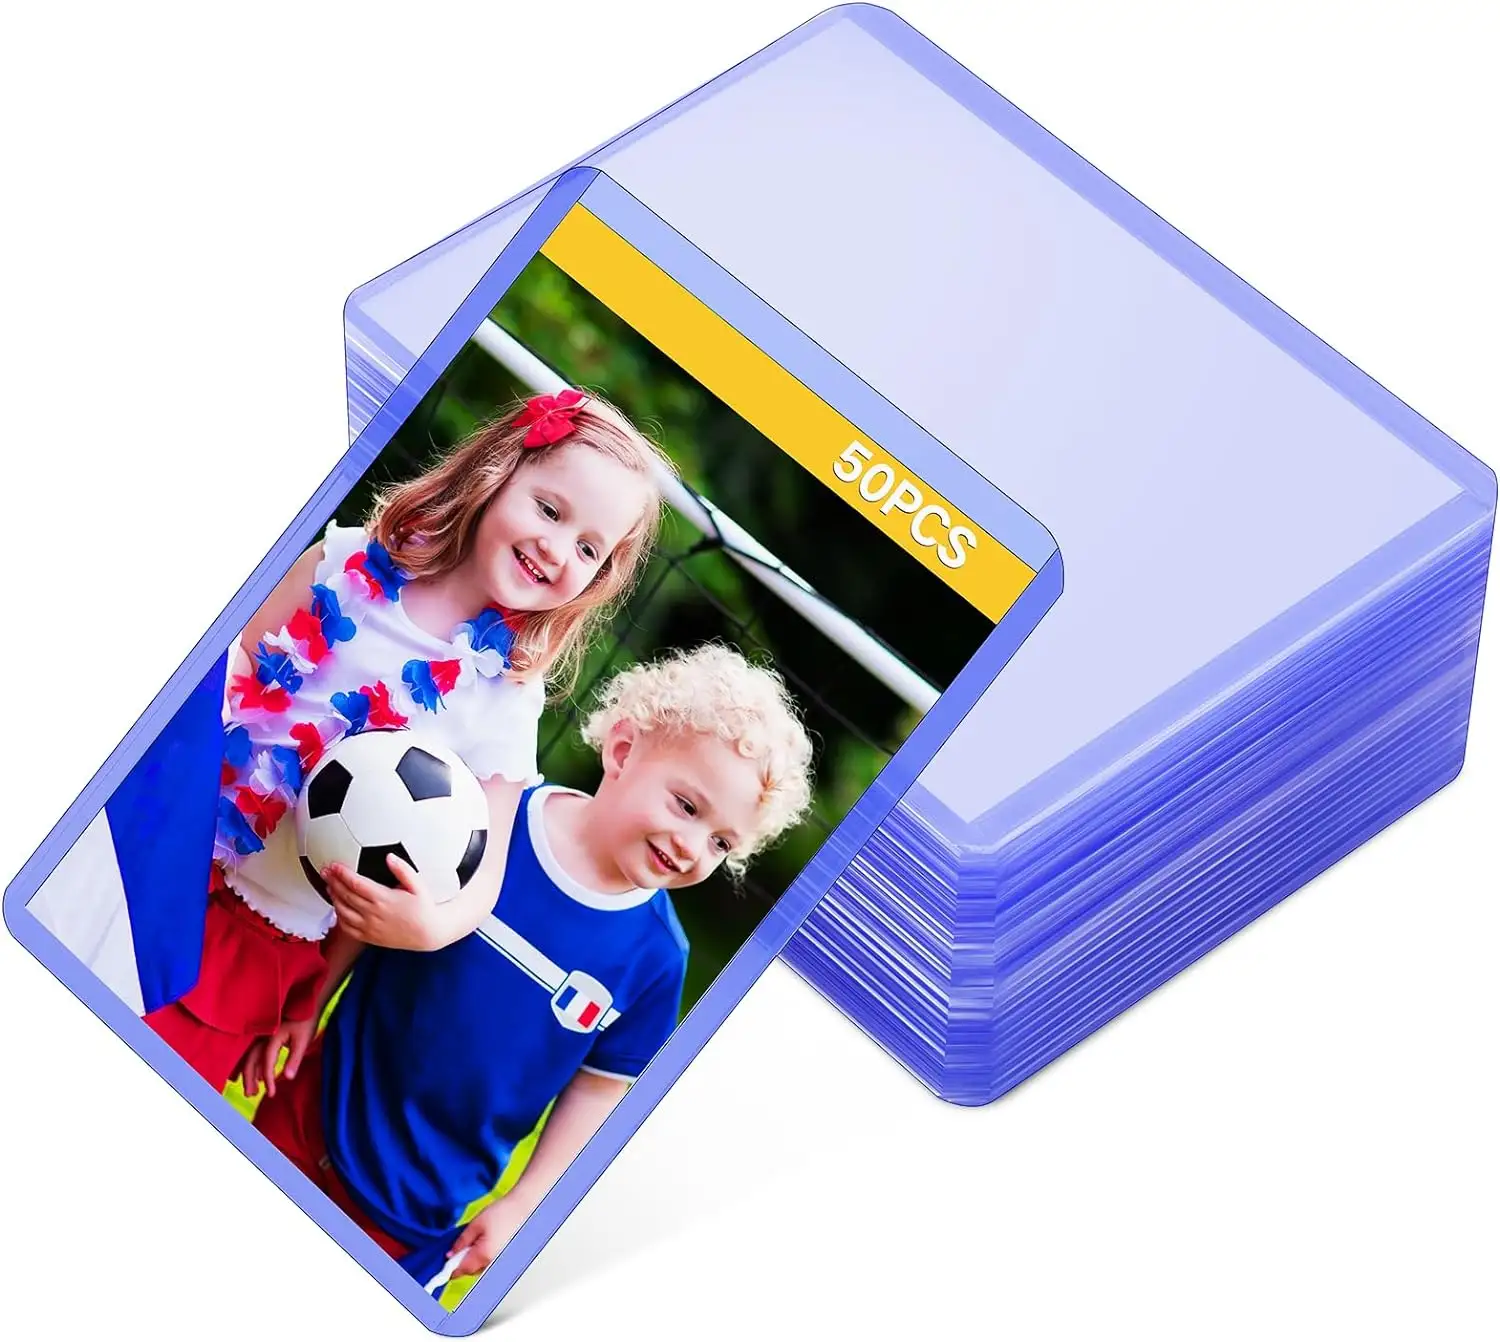 スーパークリアPVCフィルムソフト透明PVCフィルムカード用プラスチックスリーブスイミングプールインフレータブルコールドラミネートフィルム